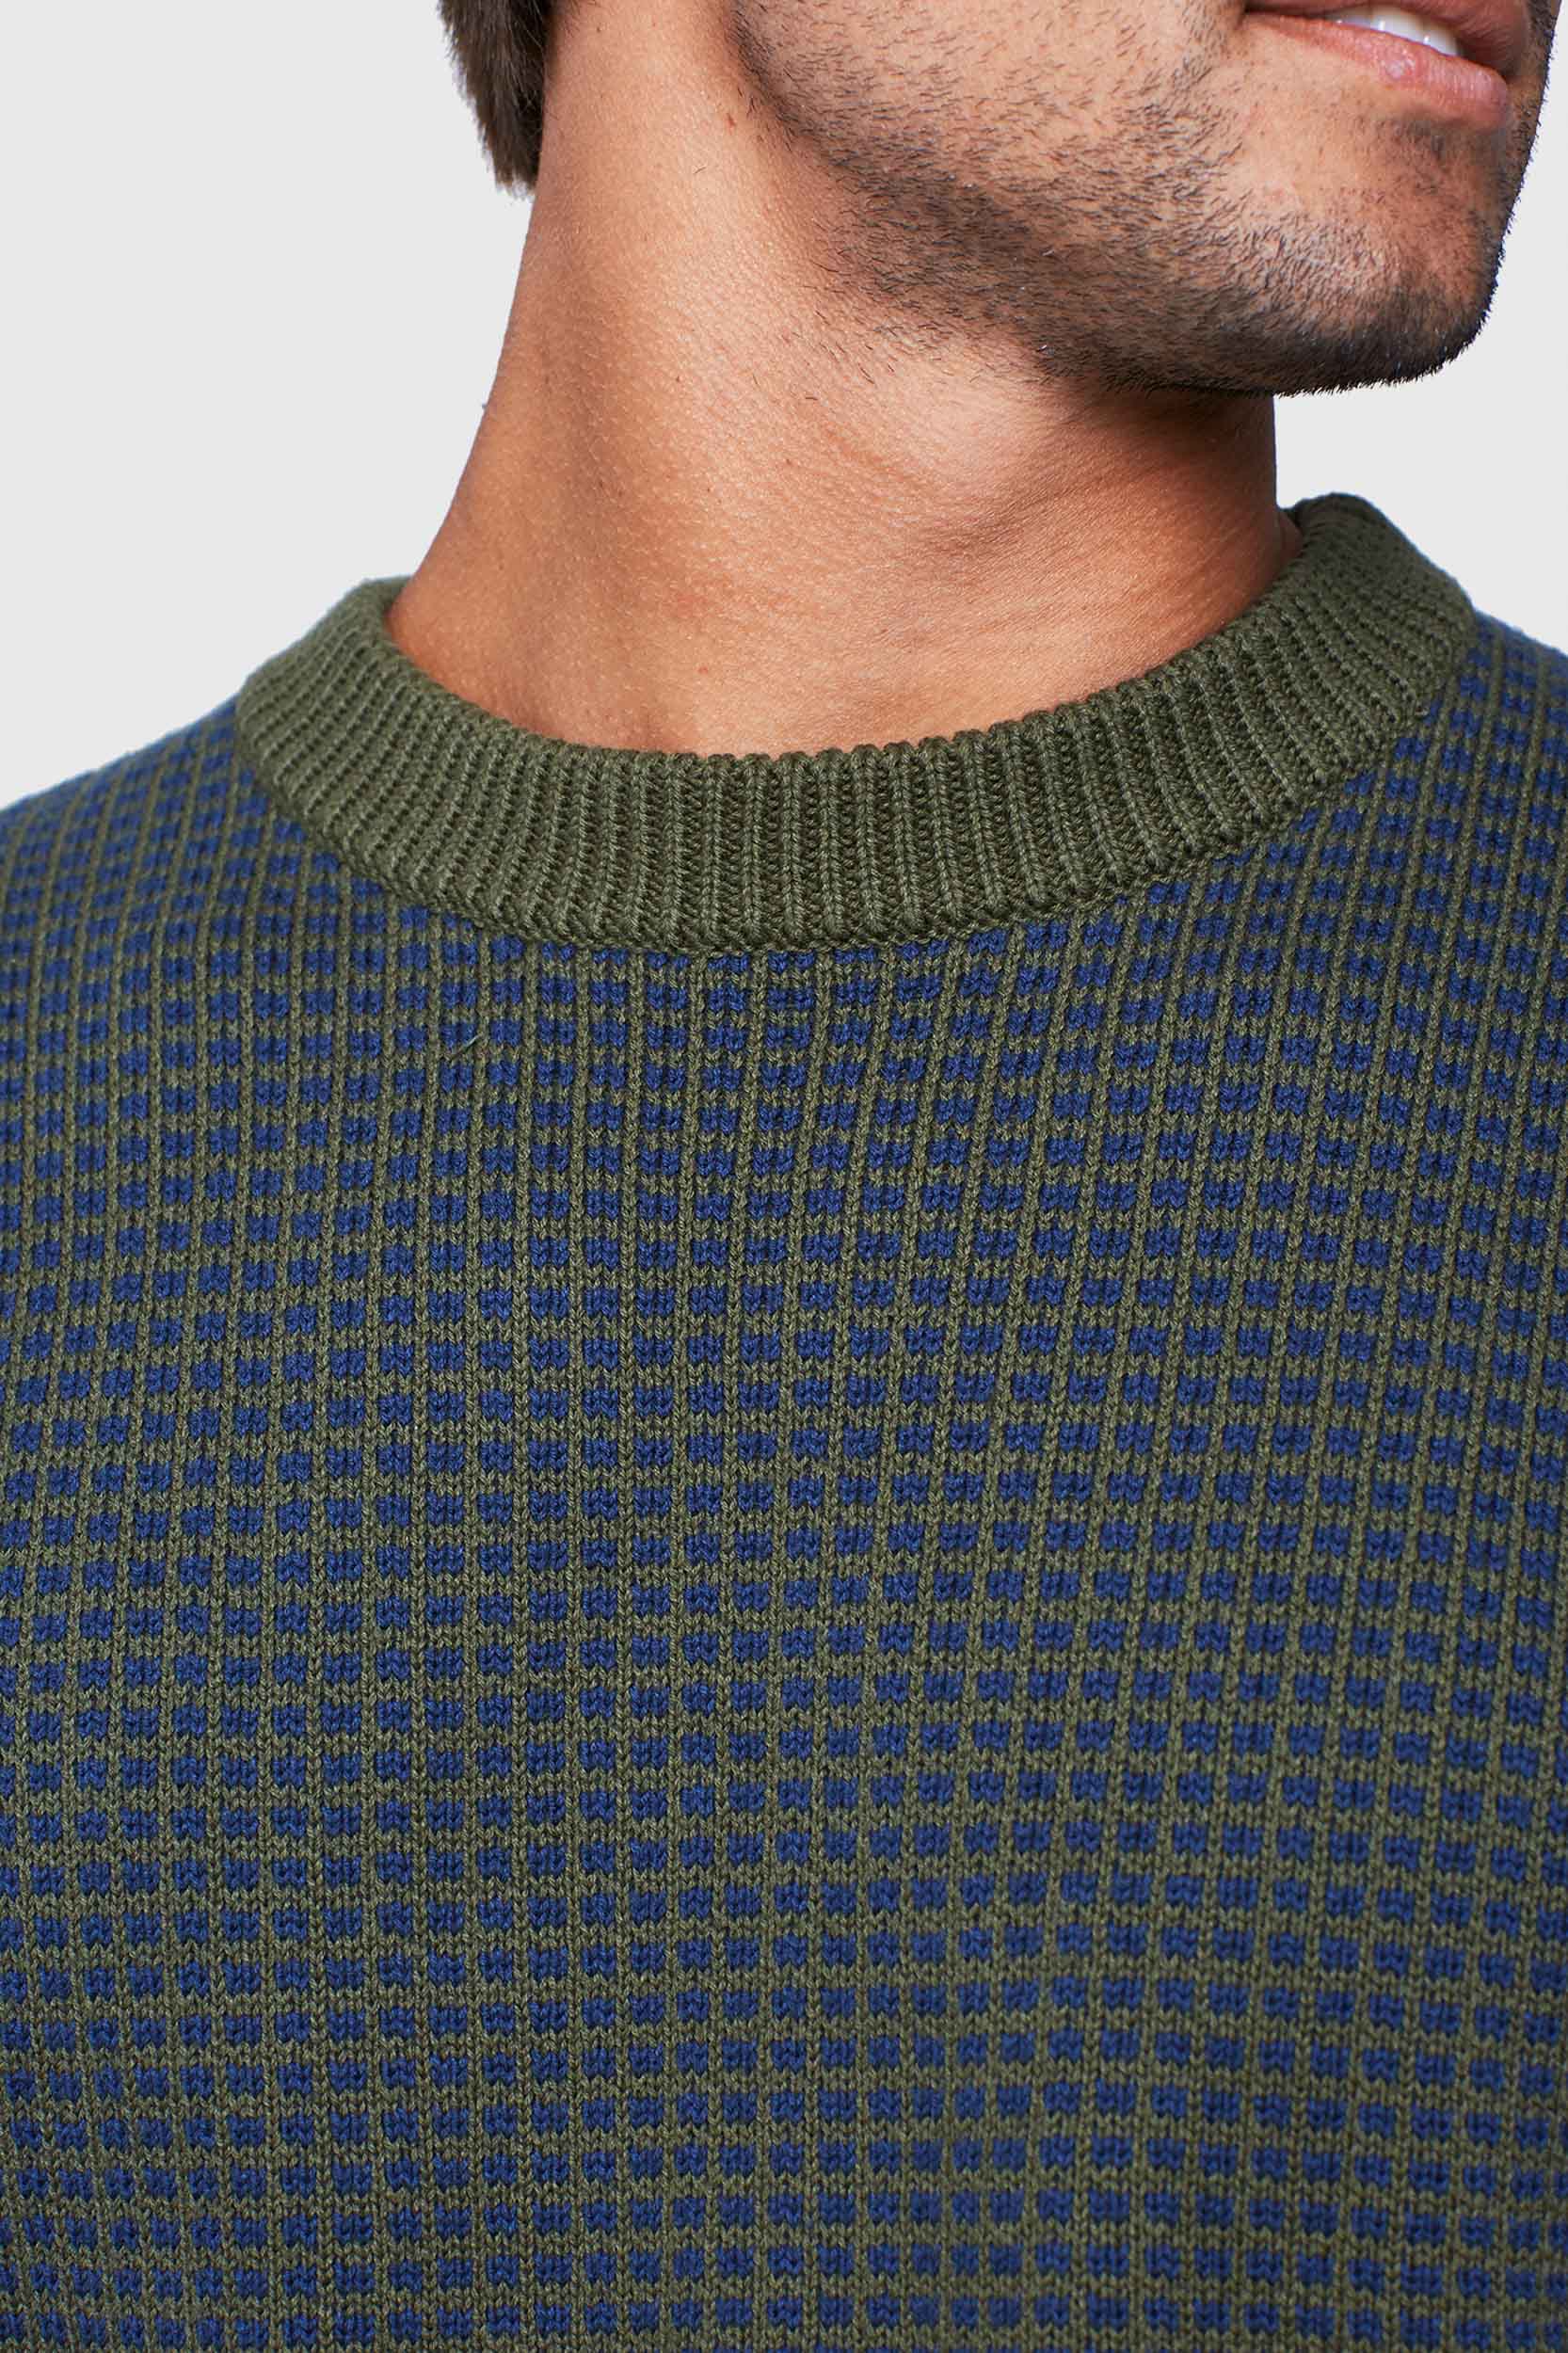 Brushwood Sweater